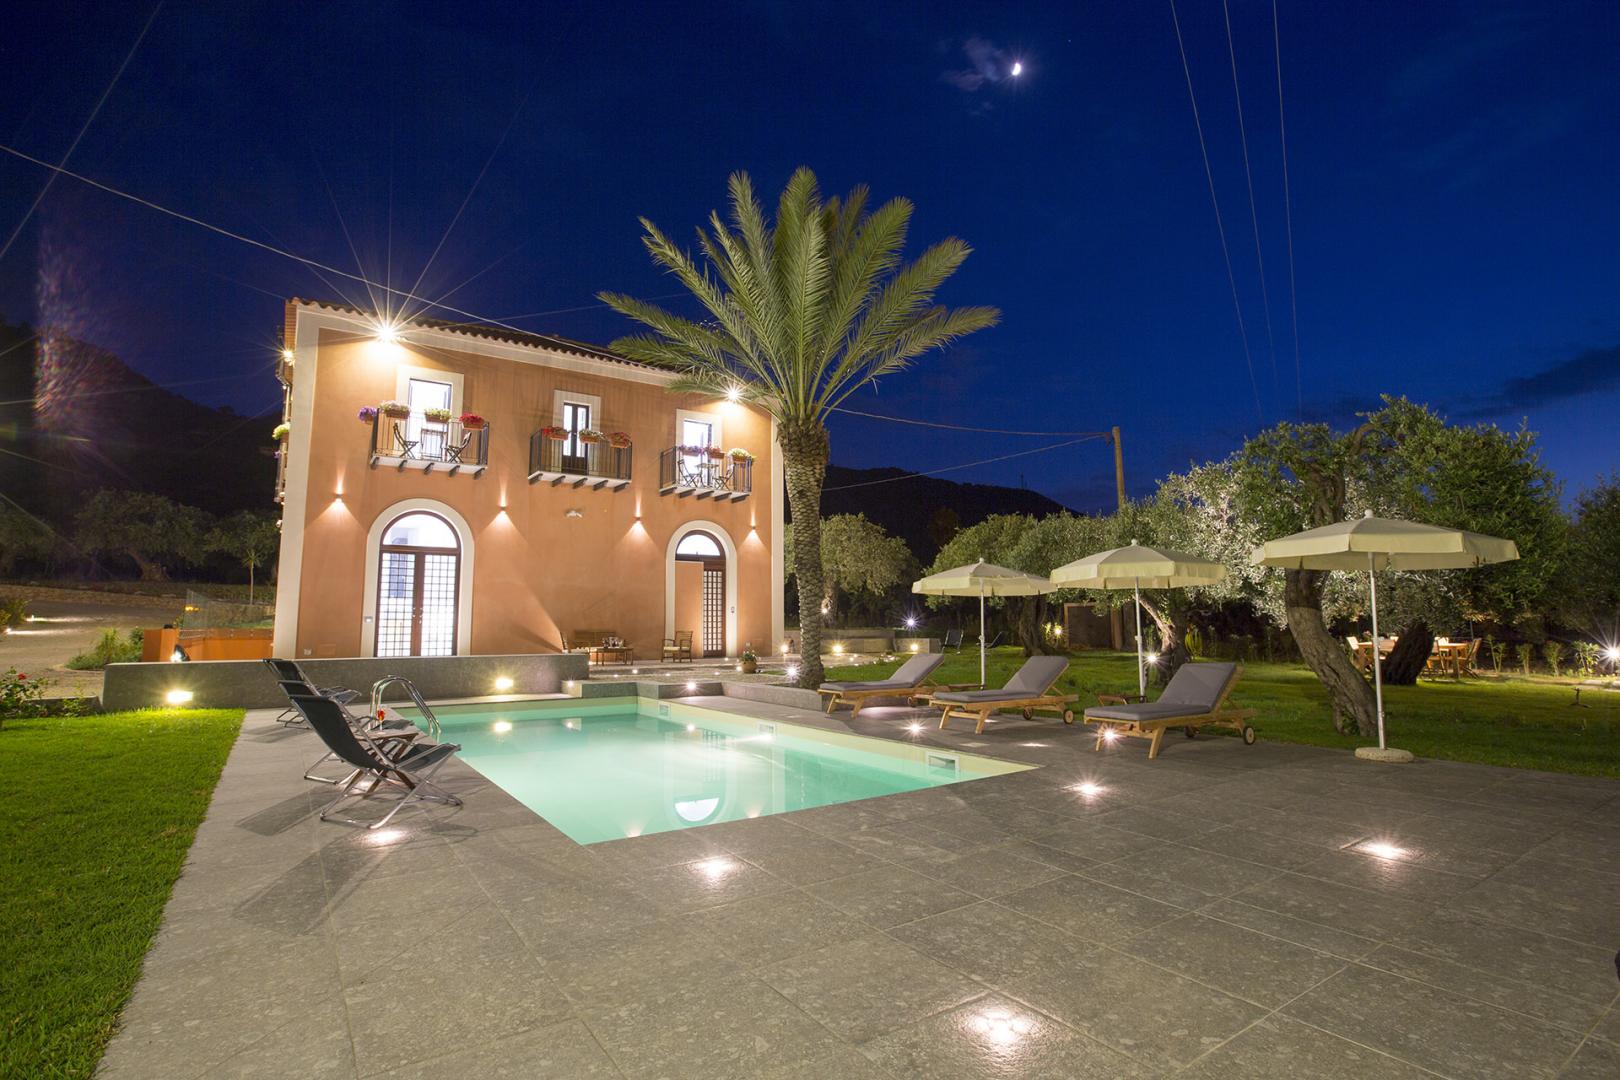 Casa con piscina di notte illuminata